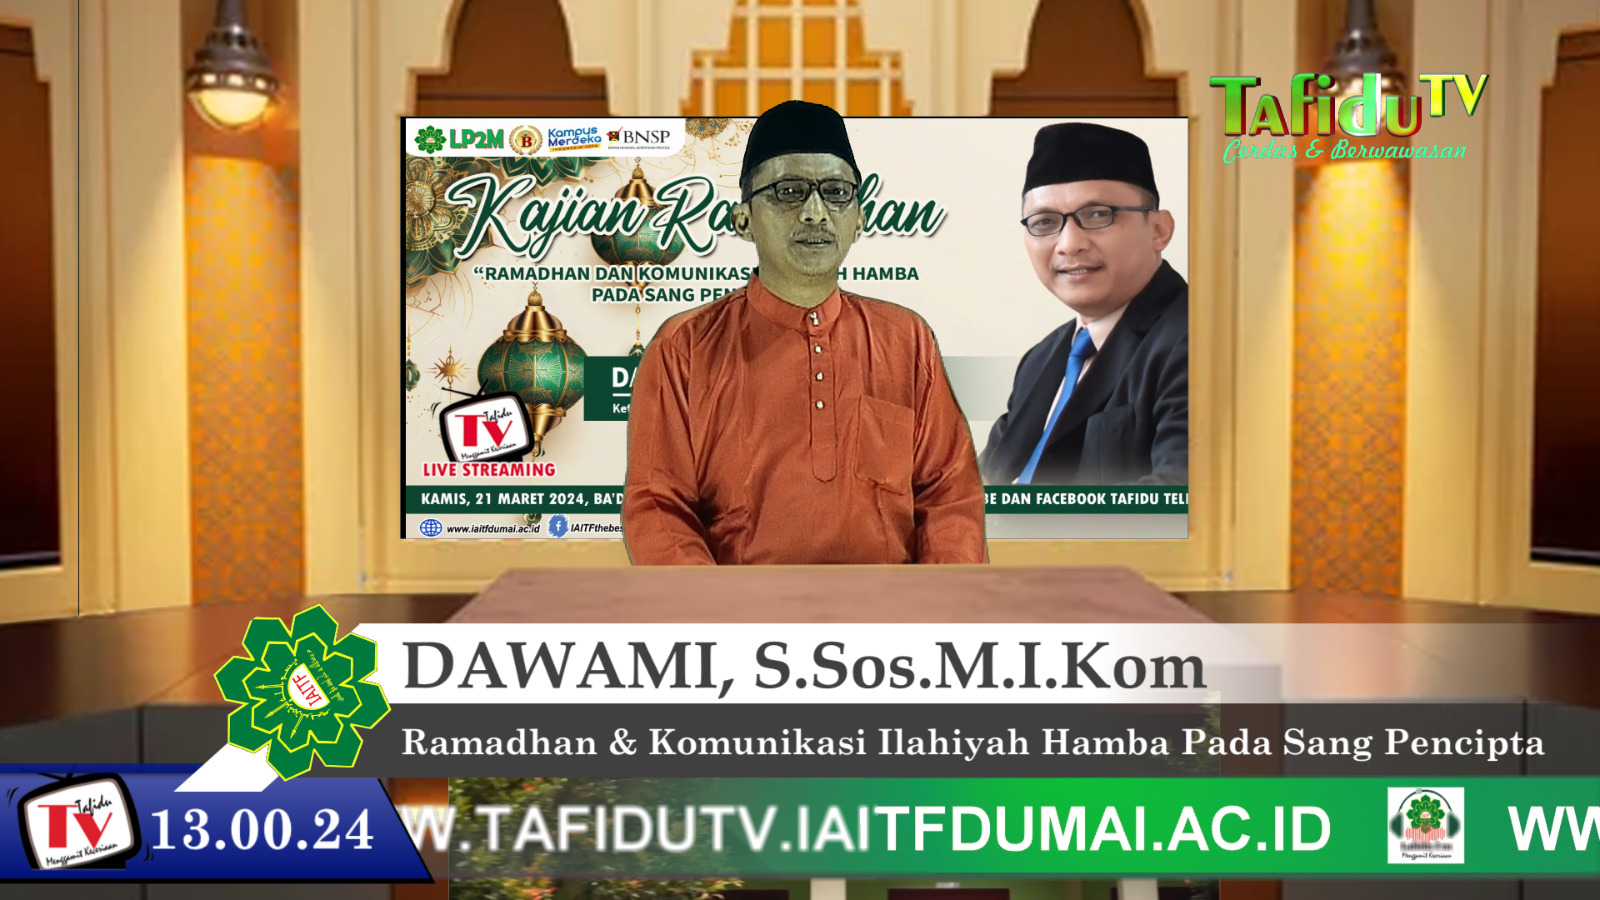 Semarak Ramadhan di Kampus IAITF Dumai: Dosen Ramaikan Kajian Ramadhan Live di Tafidu TV